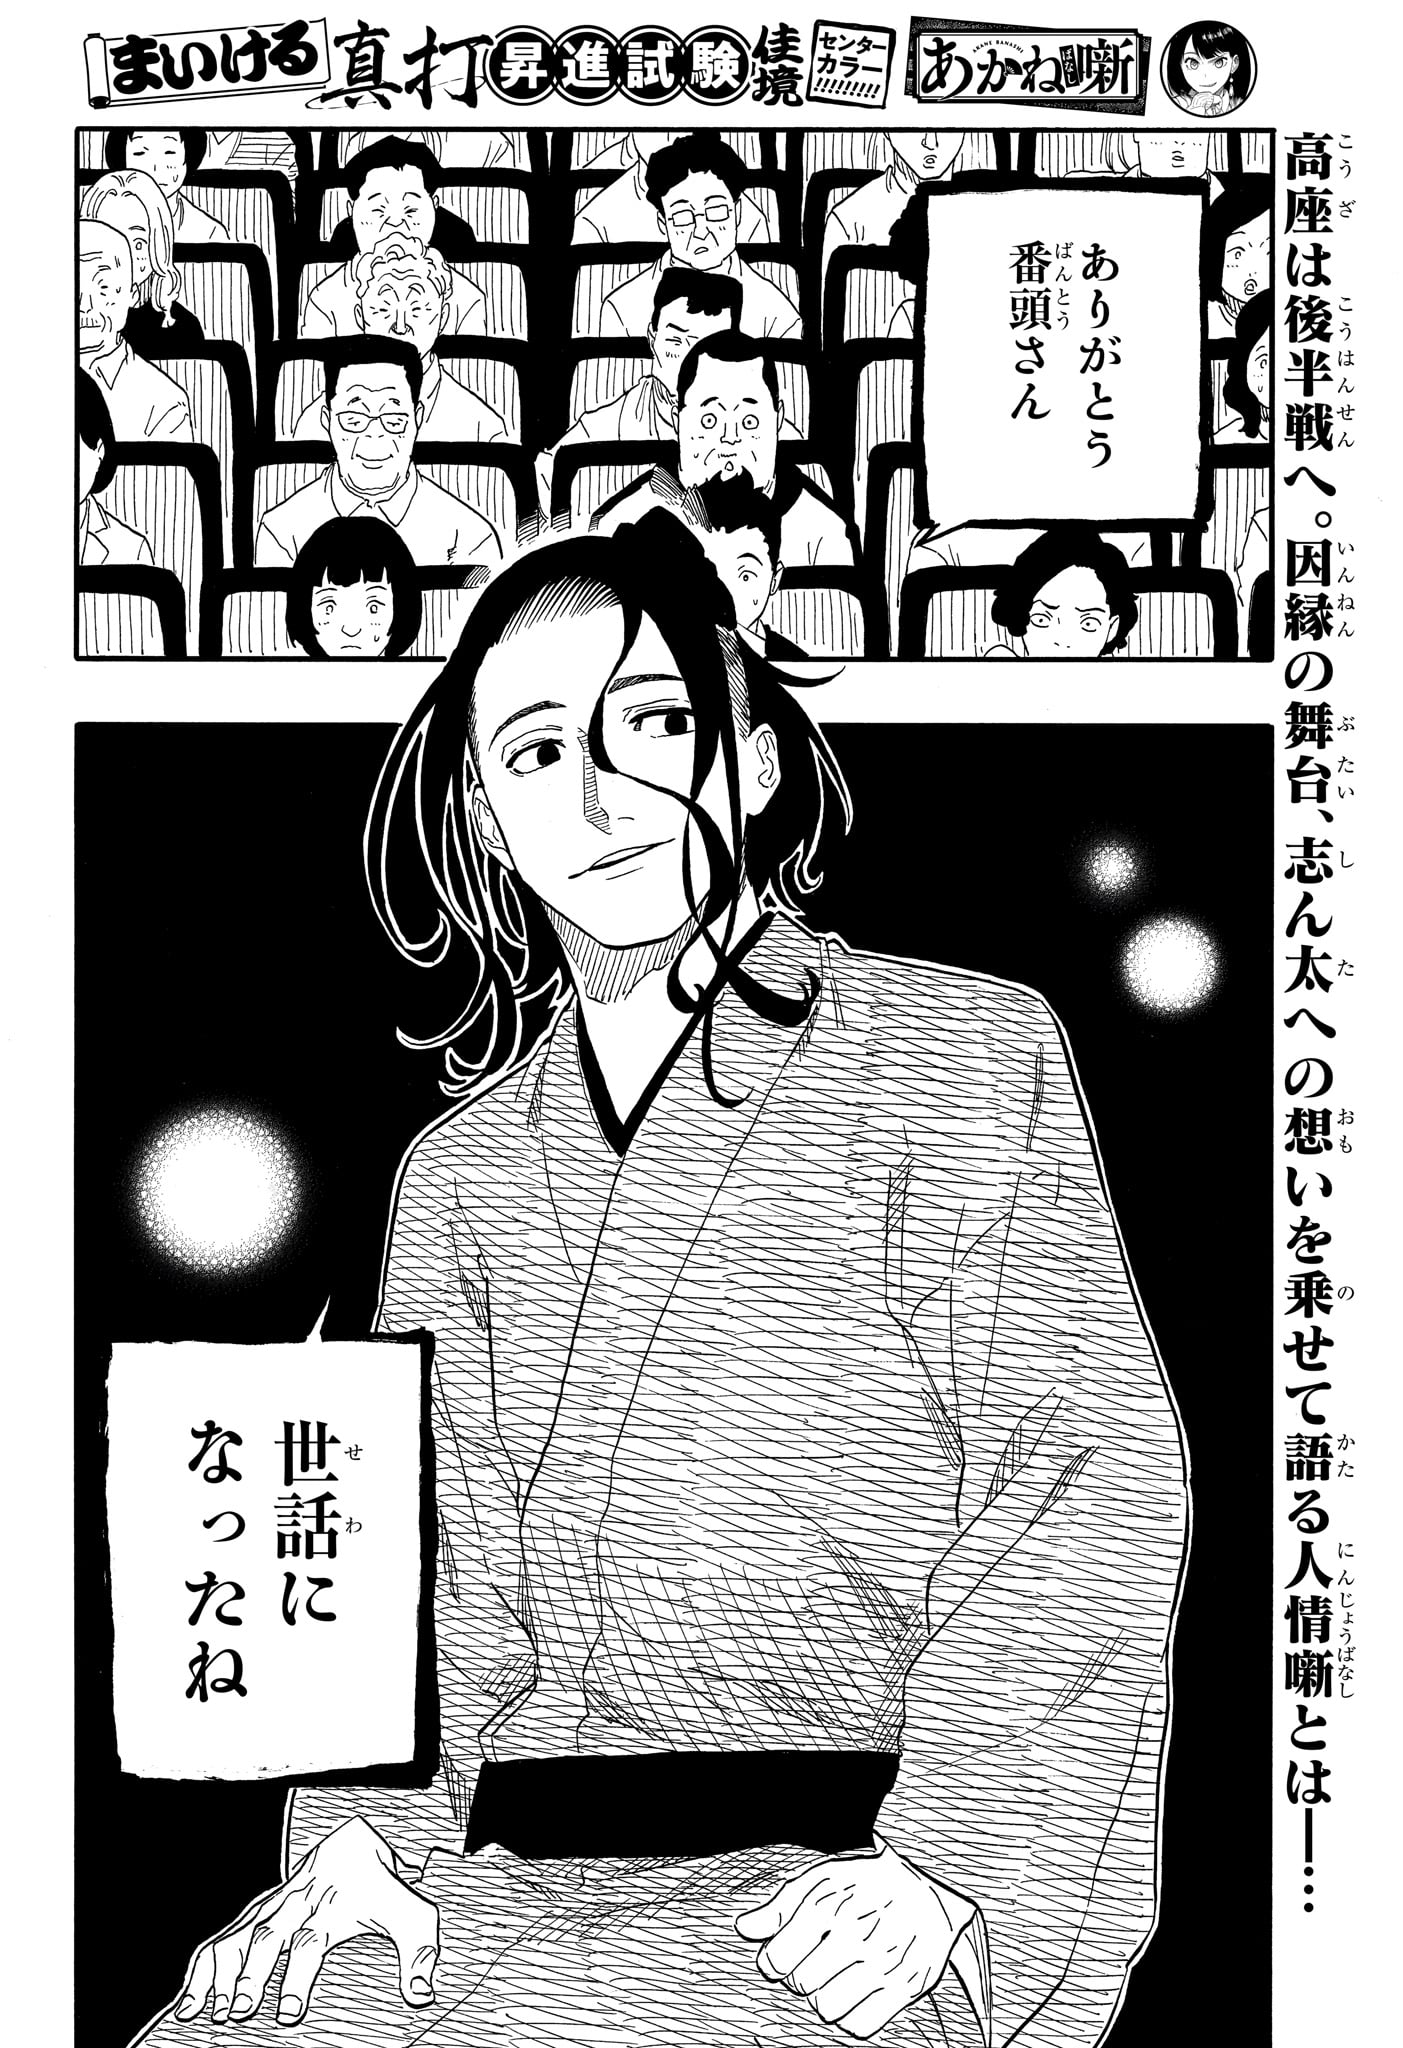 Akane-Banashi - Chapter 114 - Page 2